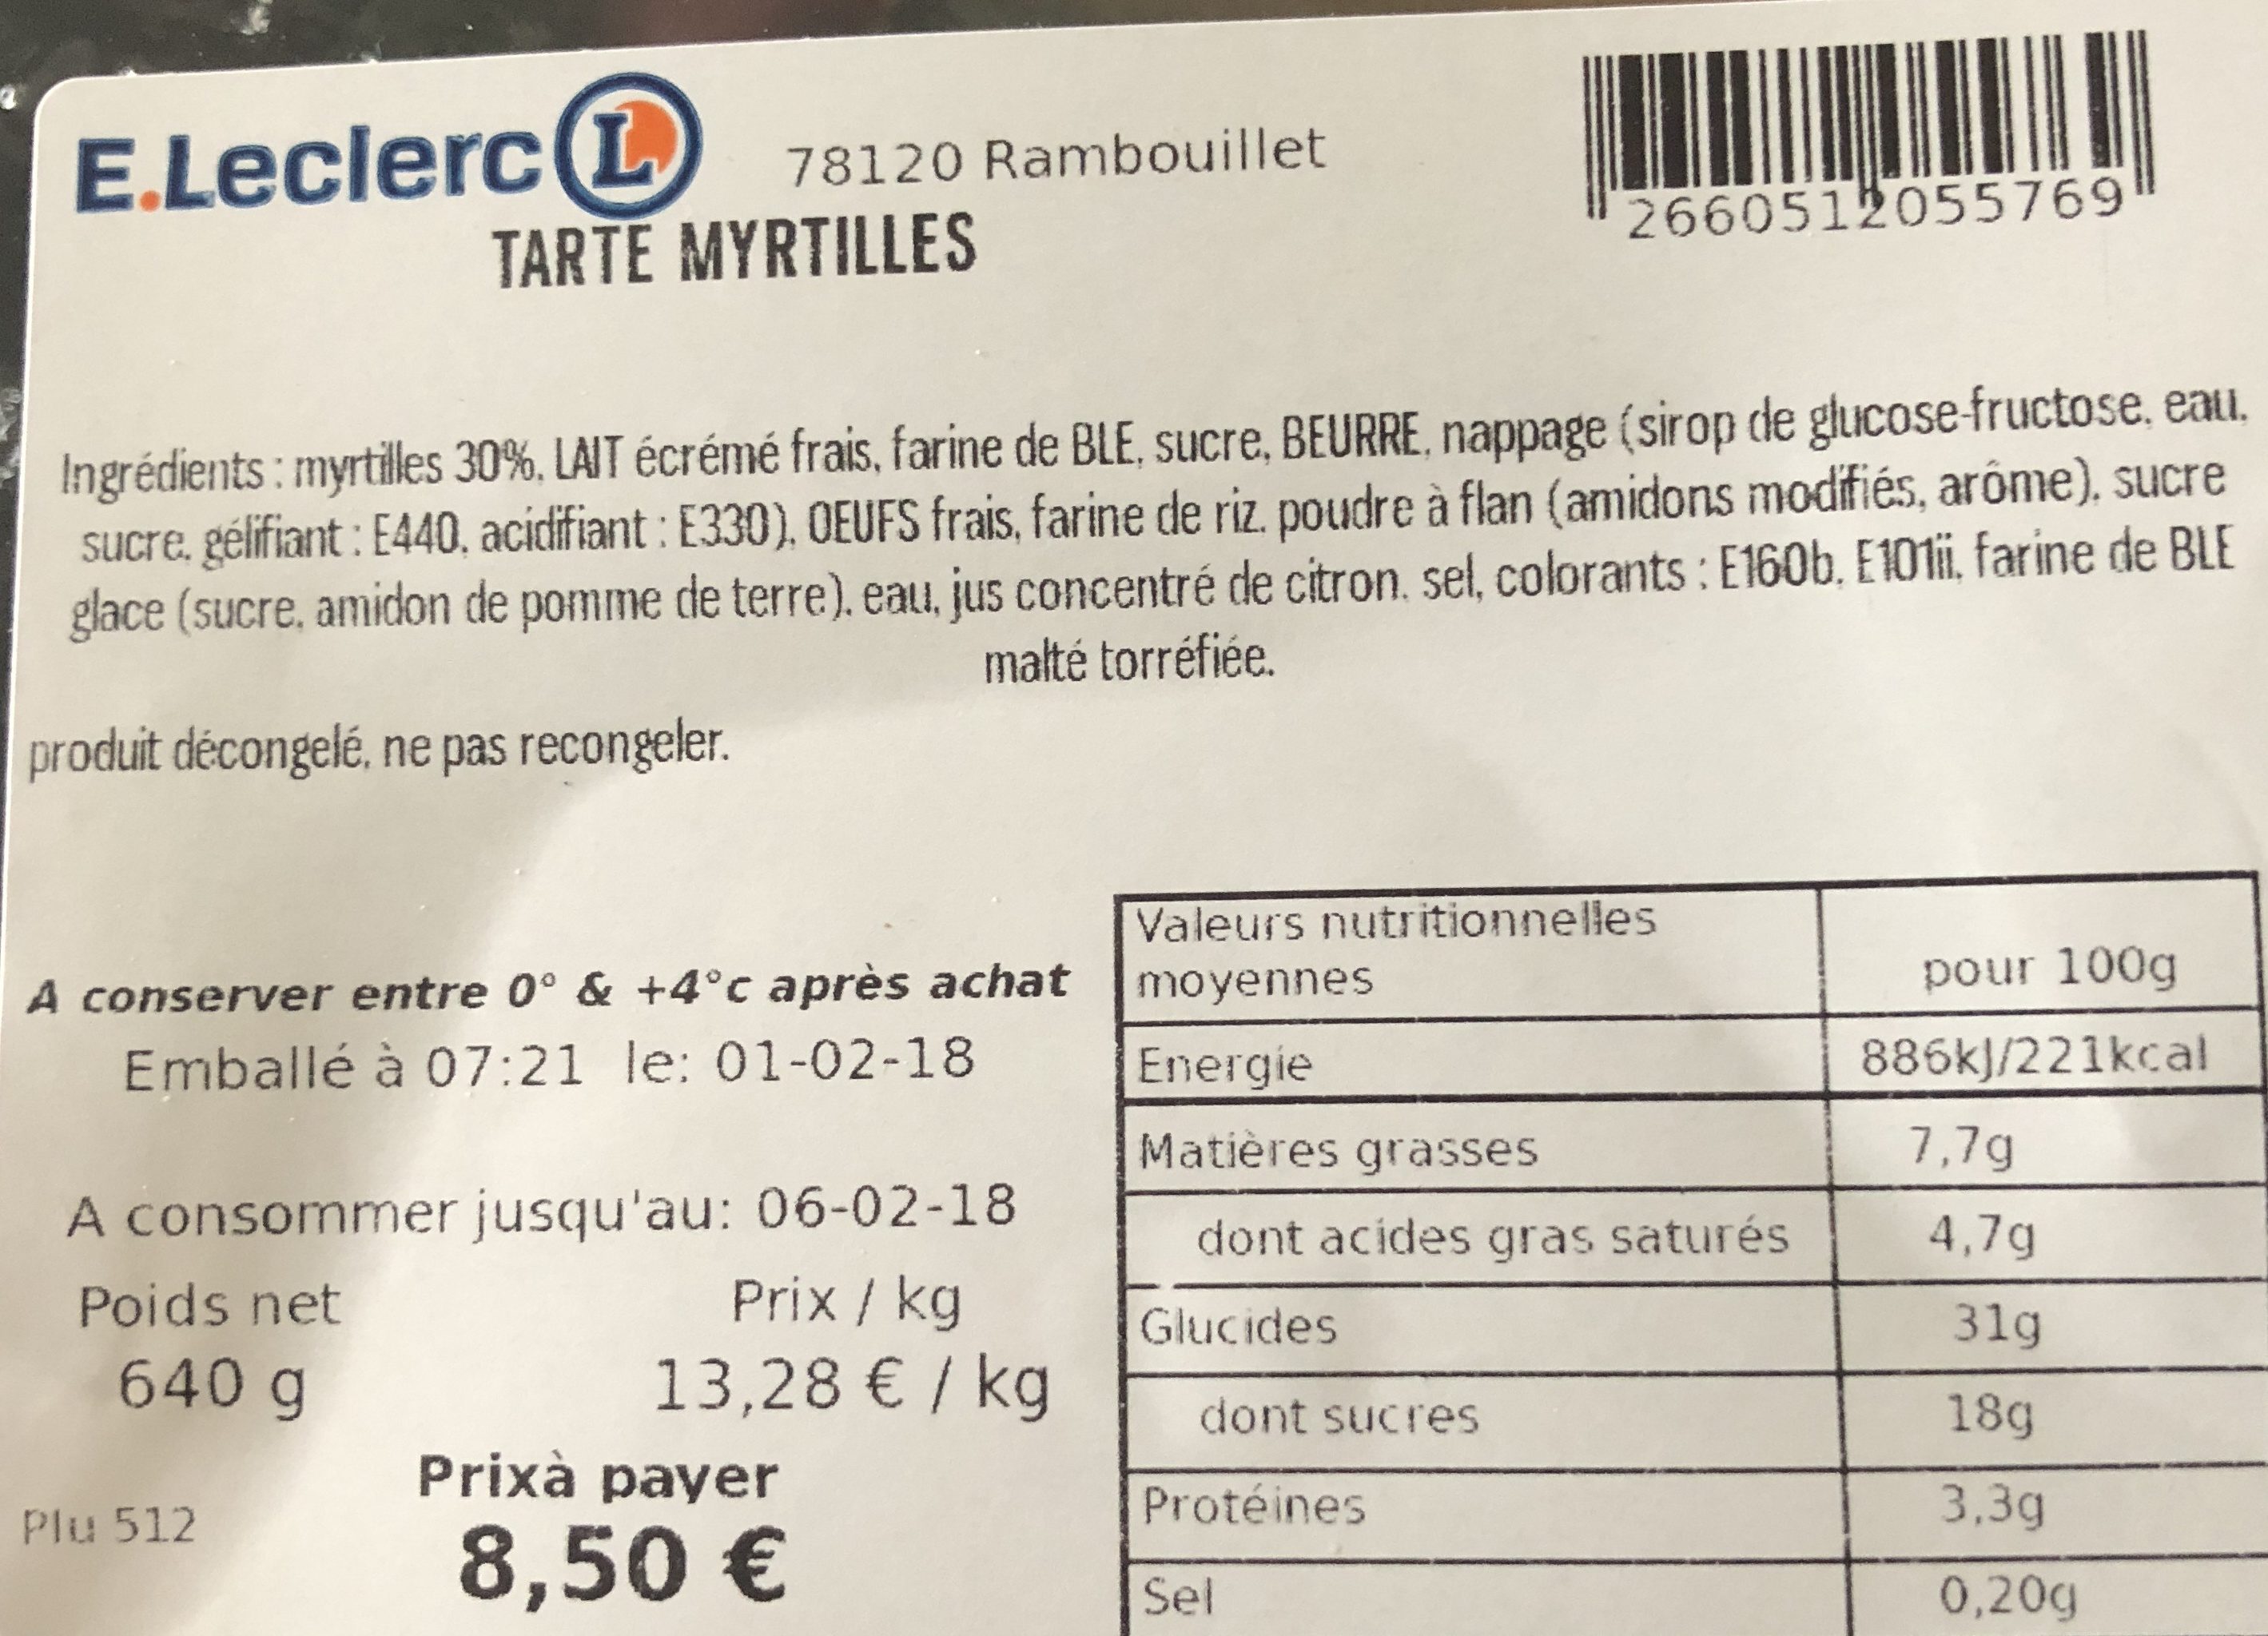 Tarte myrtilles - Ingredients - fr